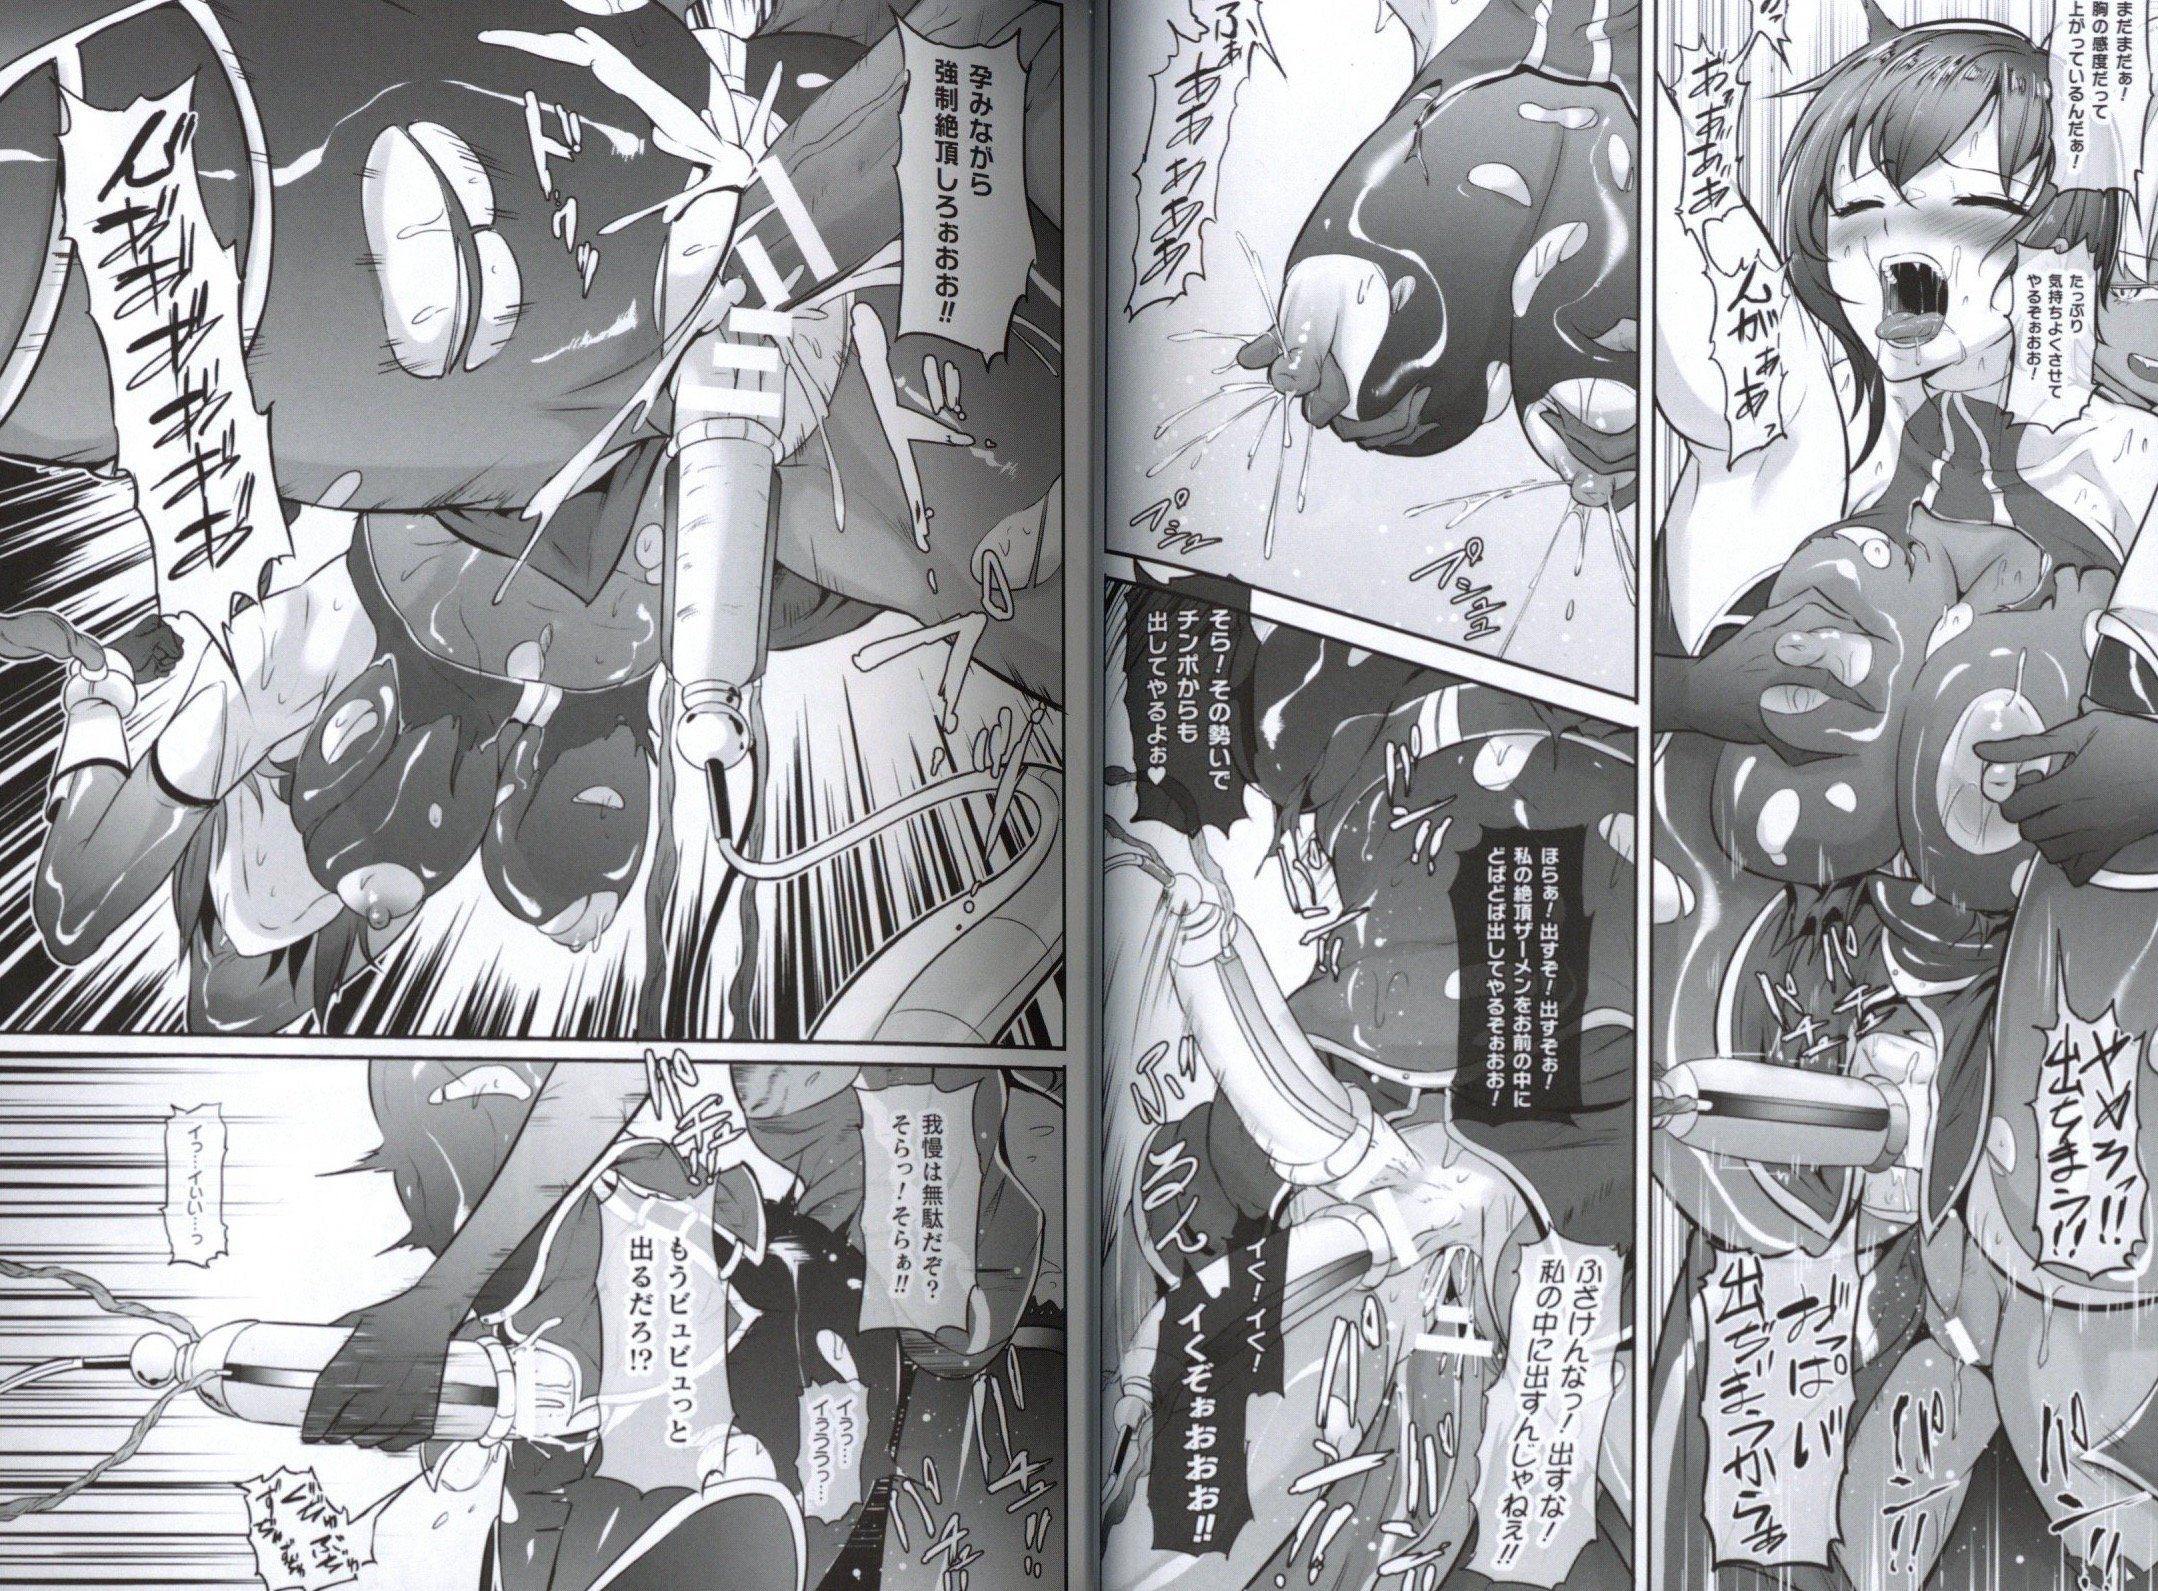 Futa Hentai Manga: Where dreams come to life